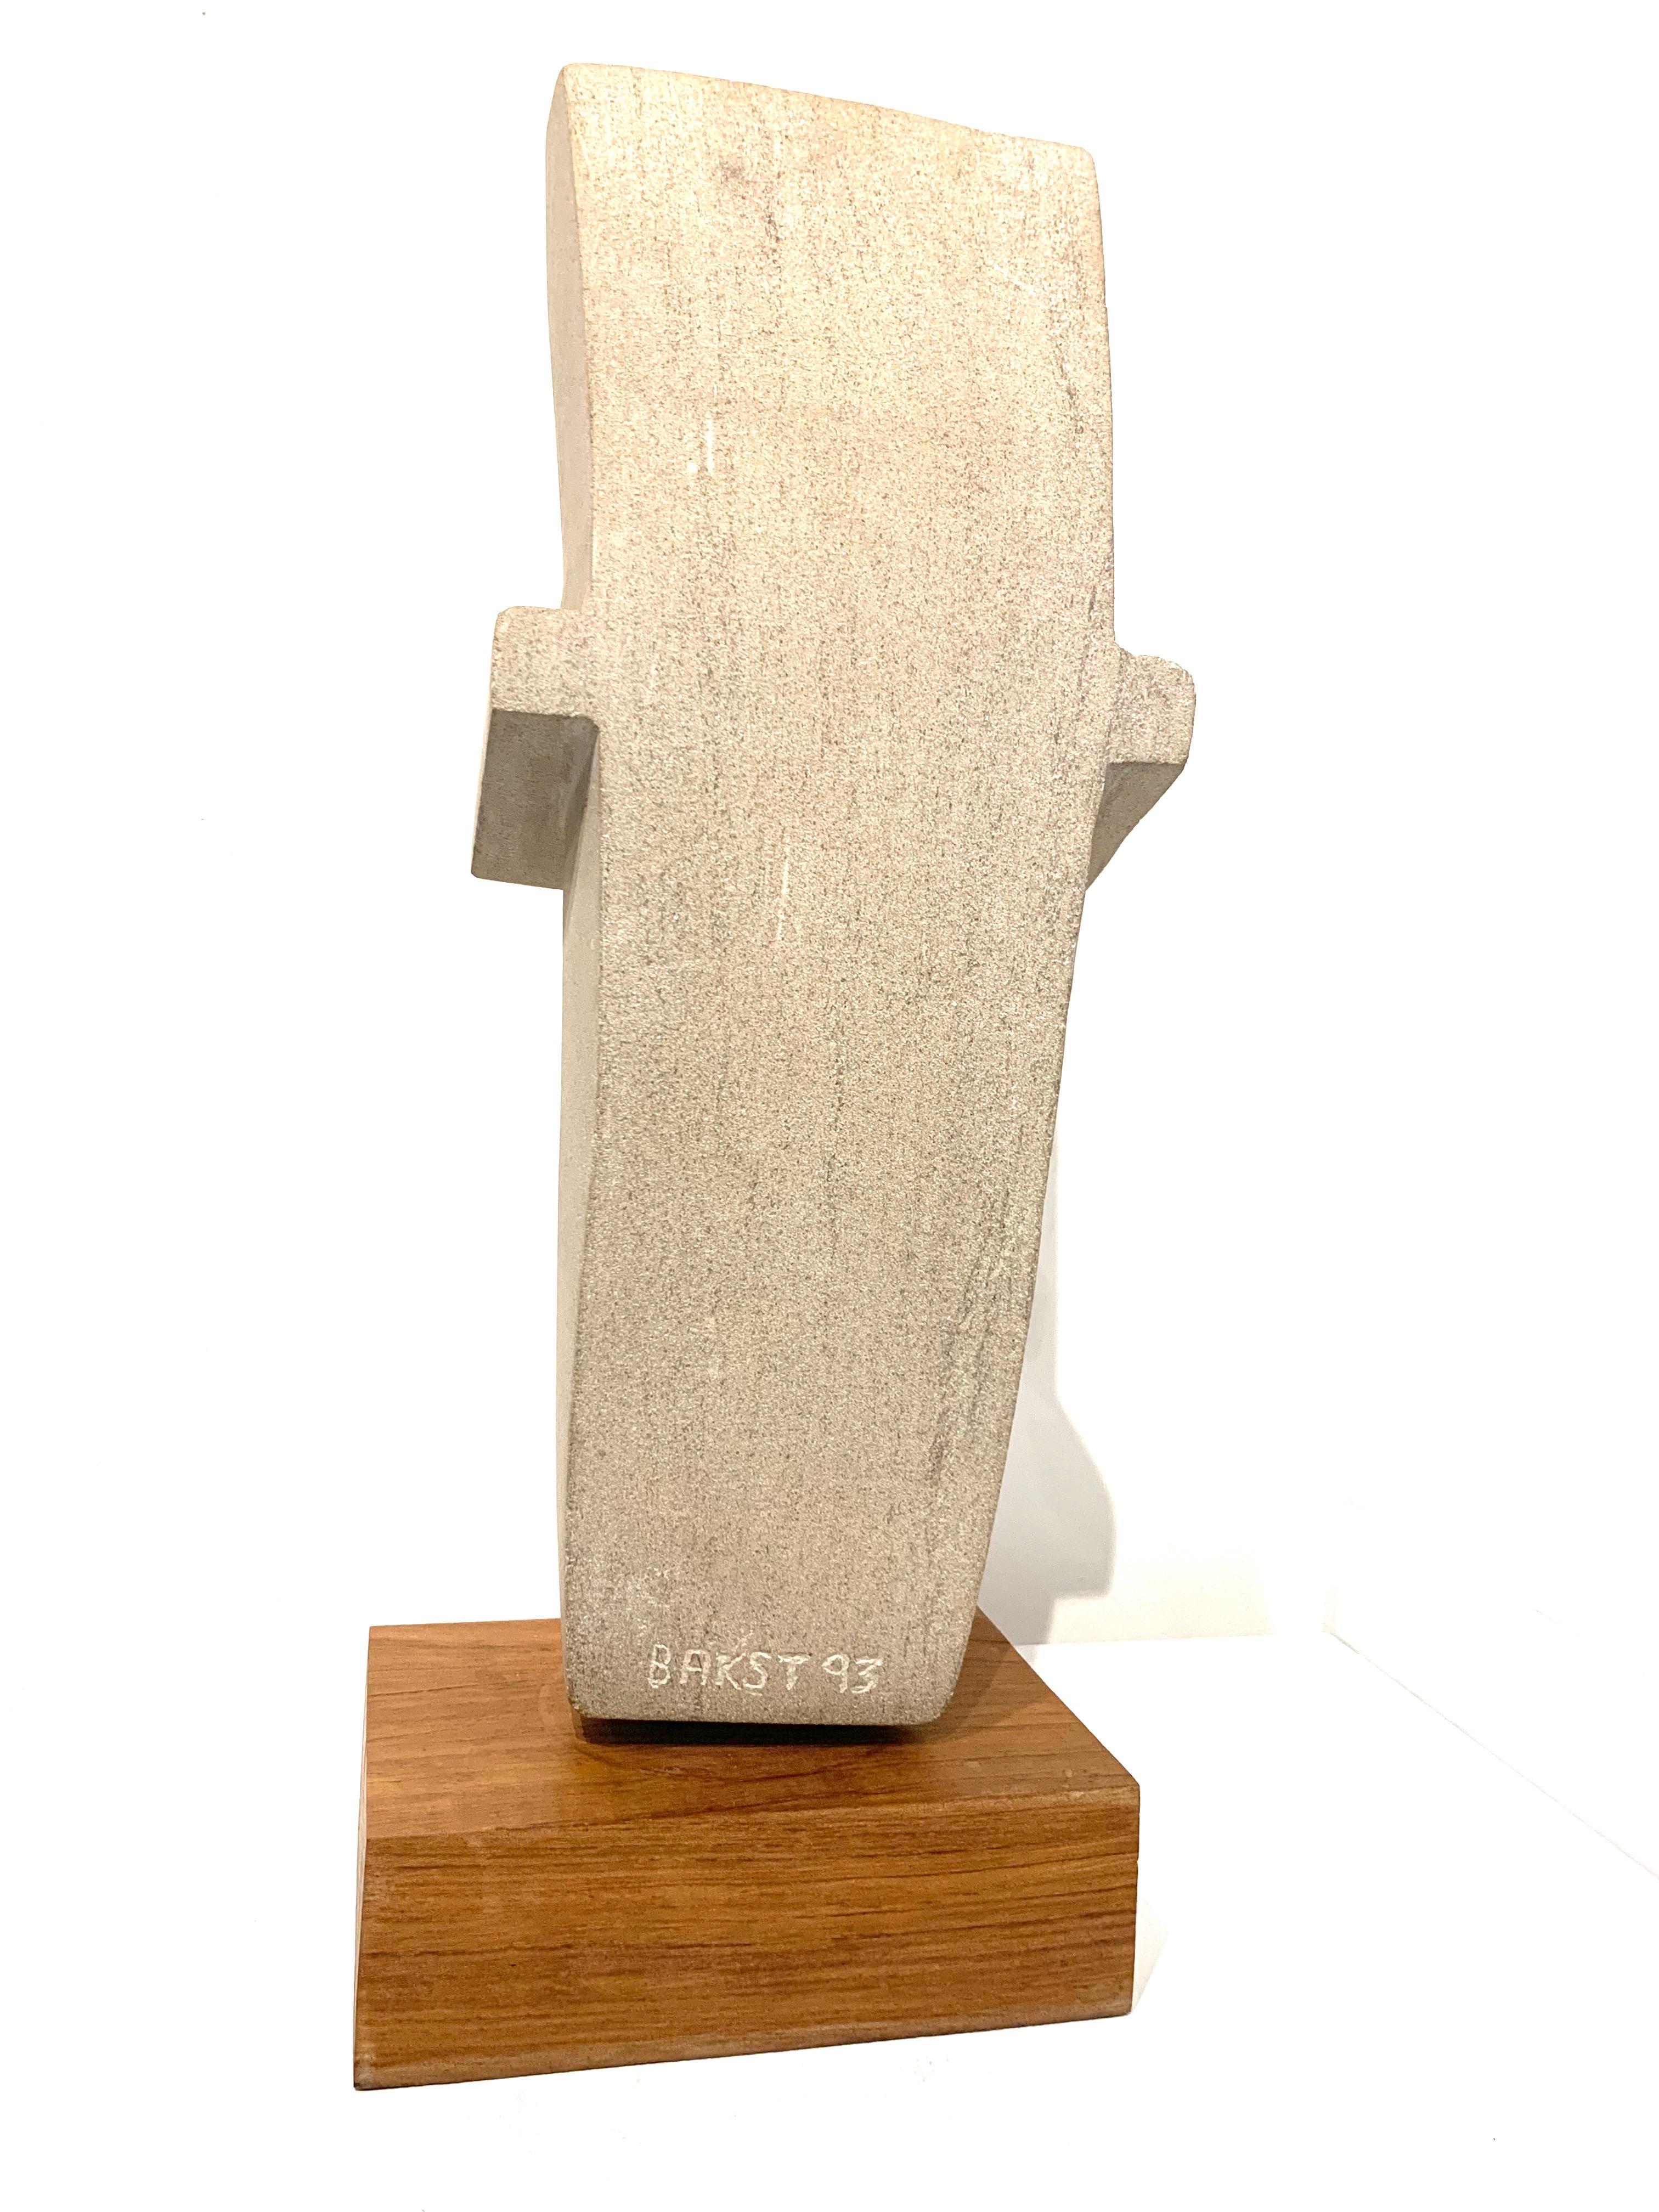 Cast Concrete Sculpture by Bakst 1